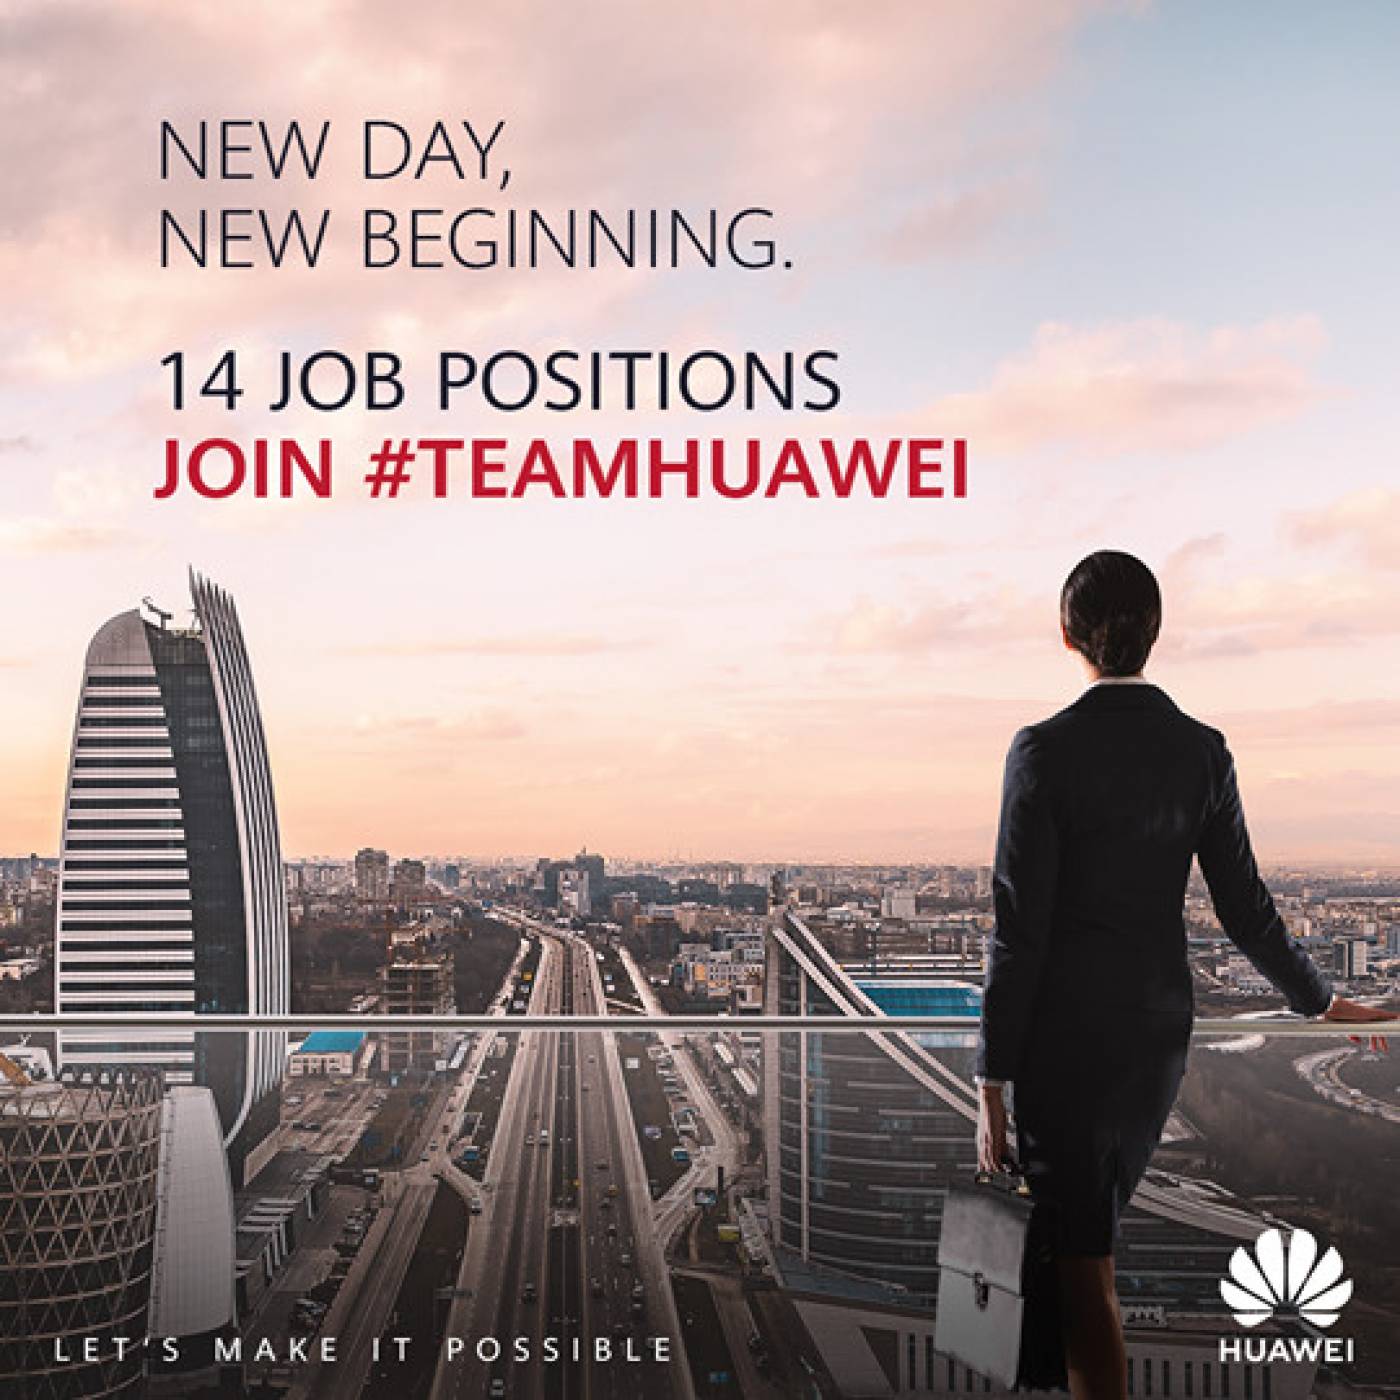 Търсите работа? Huawei предлага 14 нови работни позиции